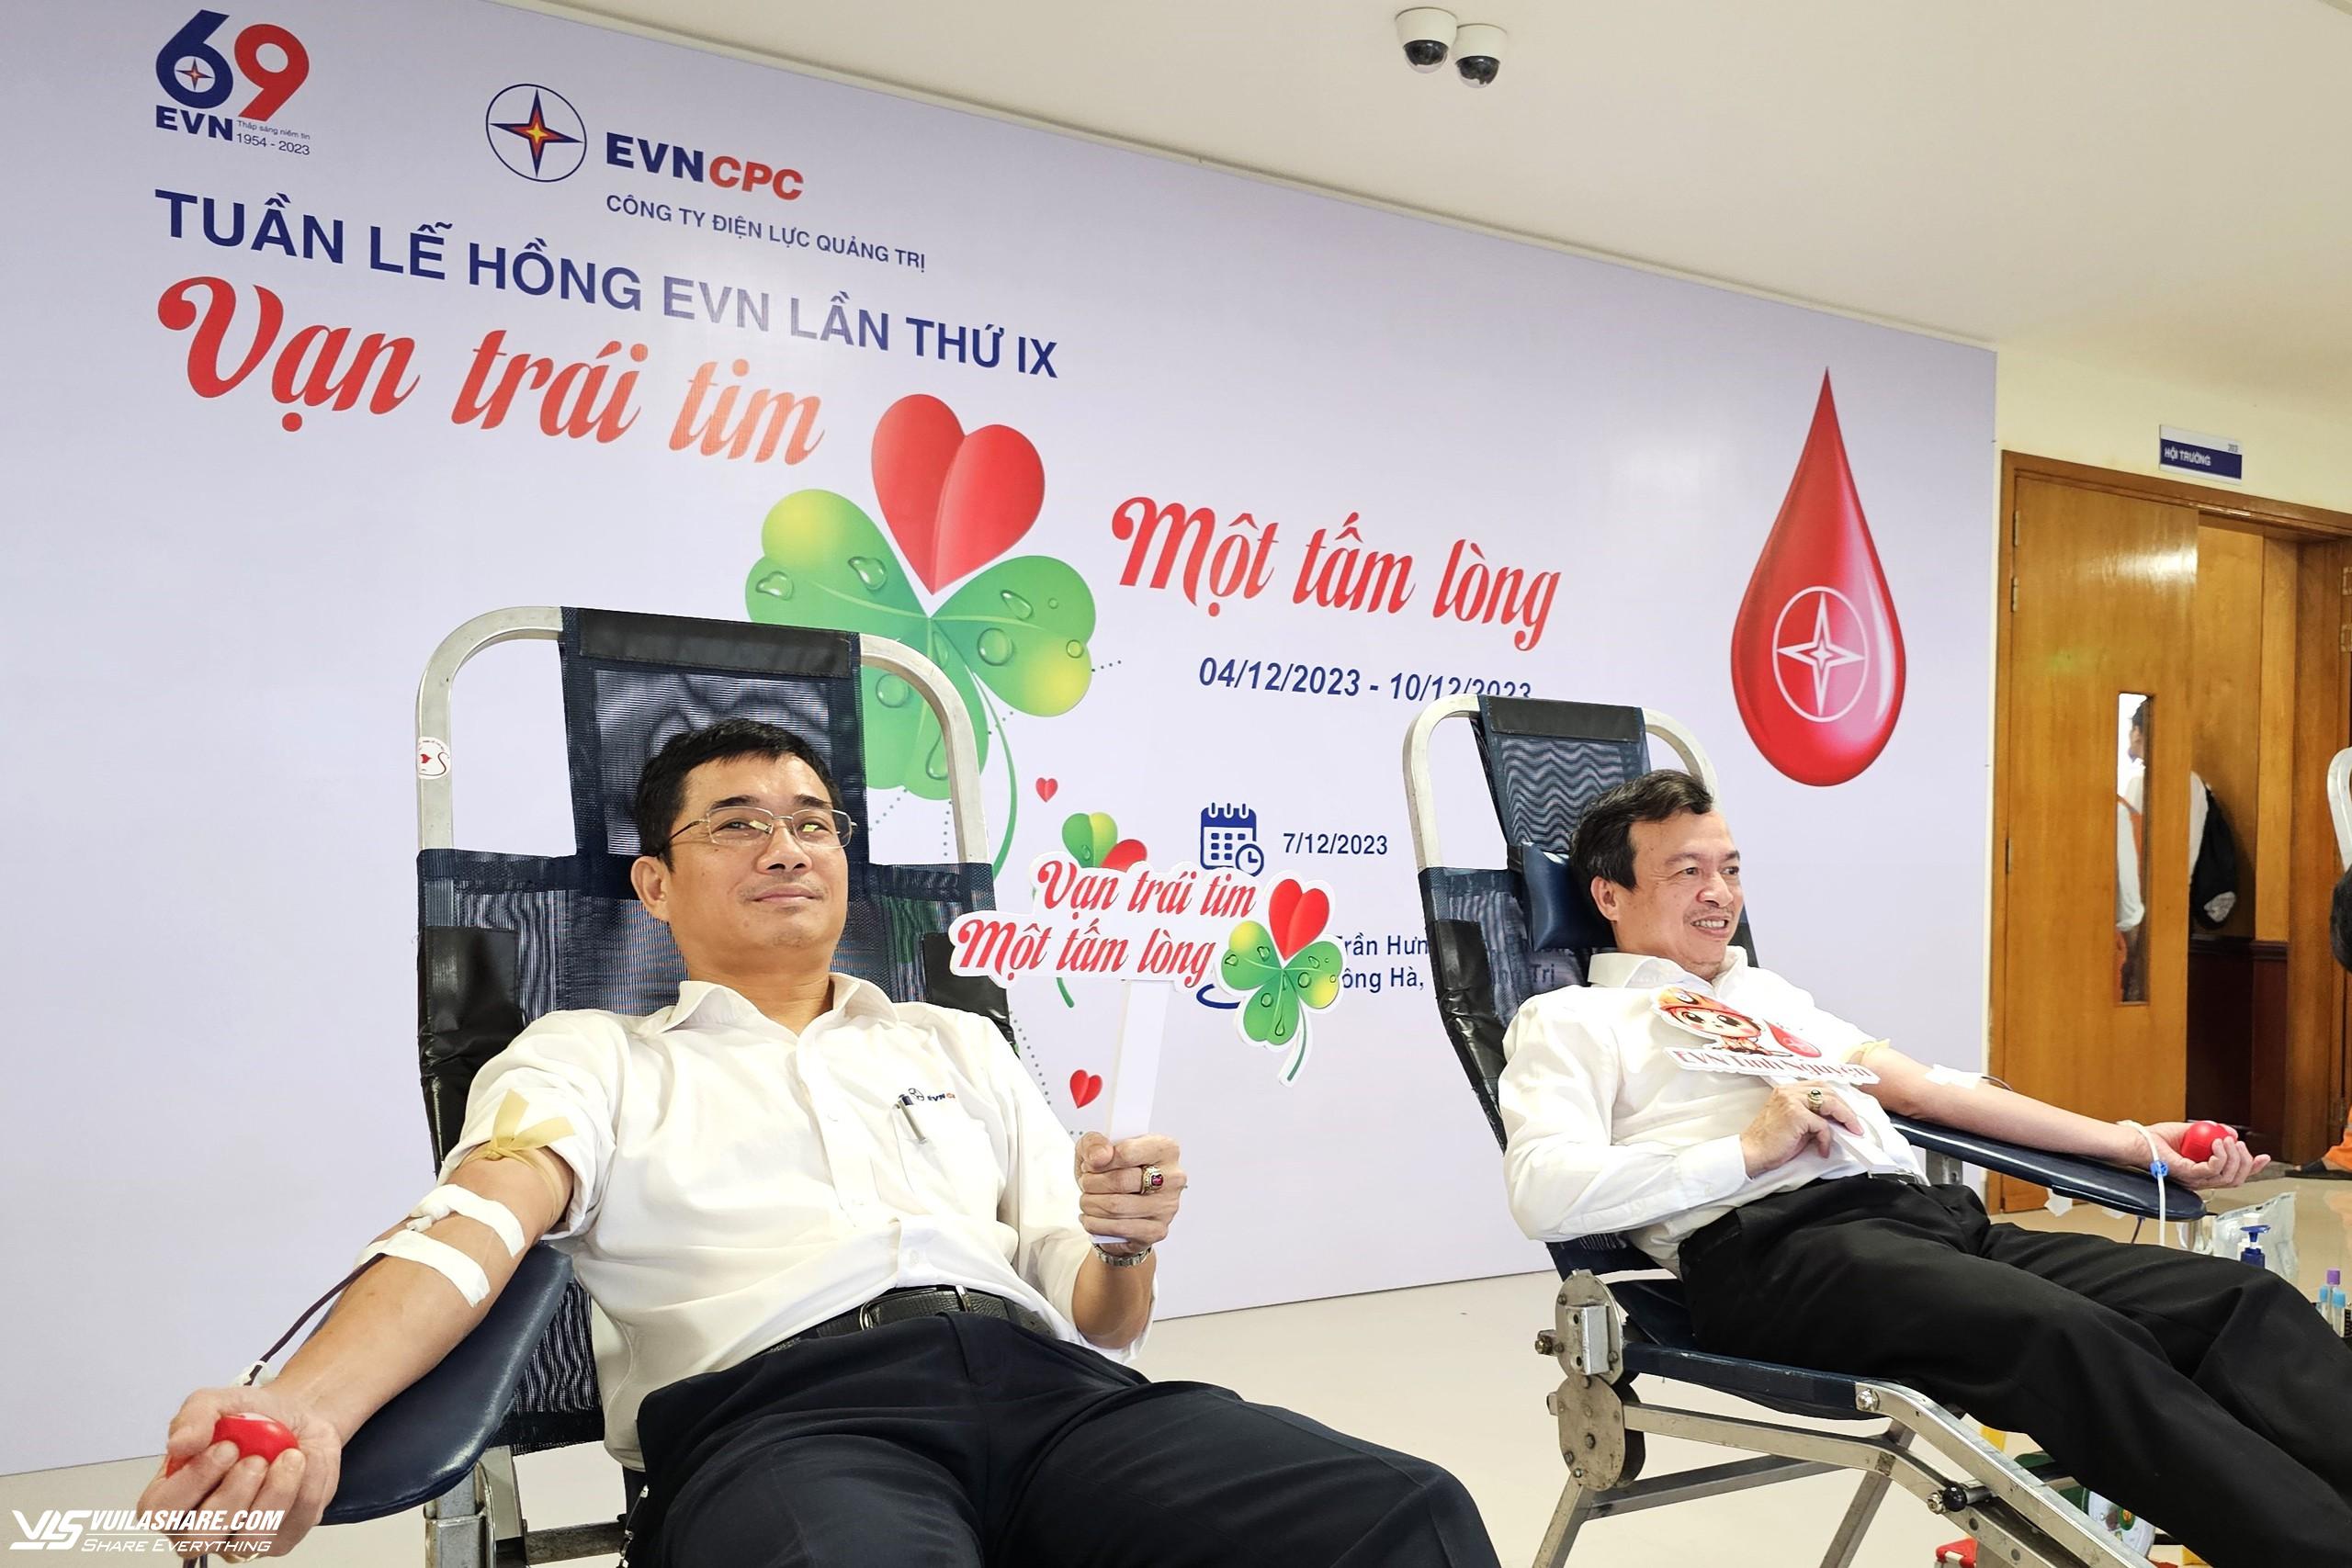 Các ông Trần Quang Đông (phải), ông Lê Anh Trung (cùng là Phó giám đốc PC Quảng Trị) tham gia hiến máu. ẢNH: T.L